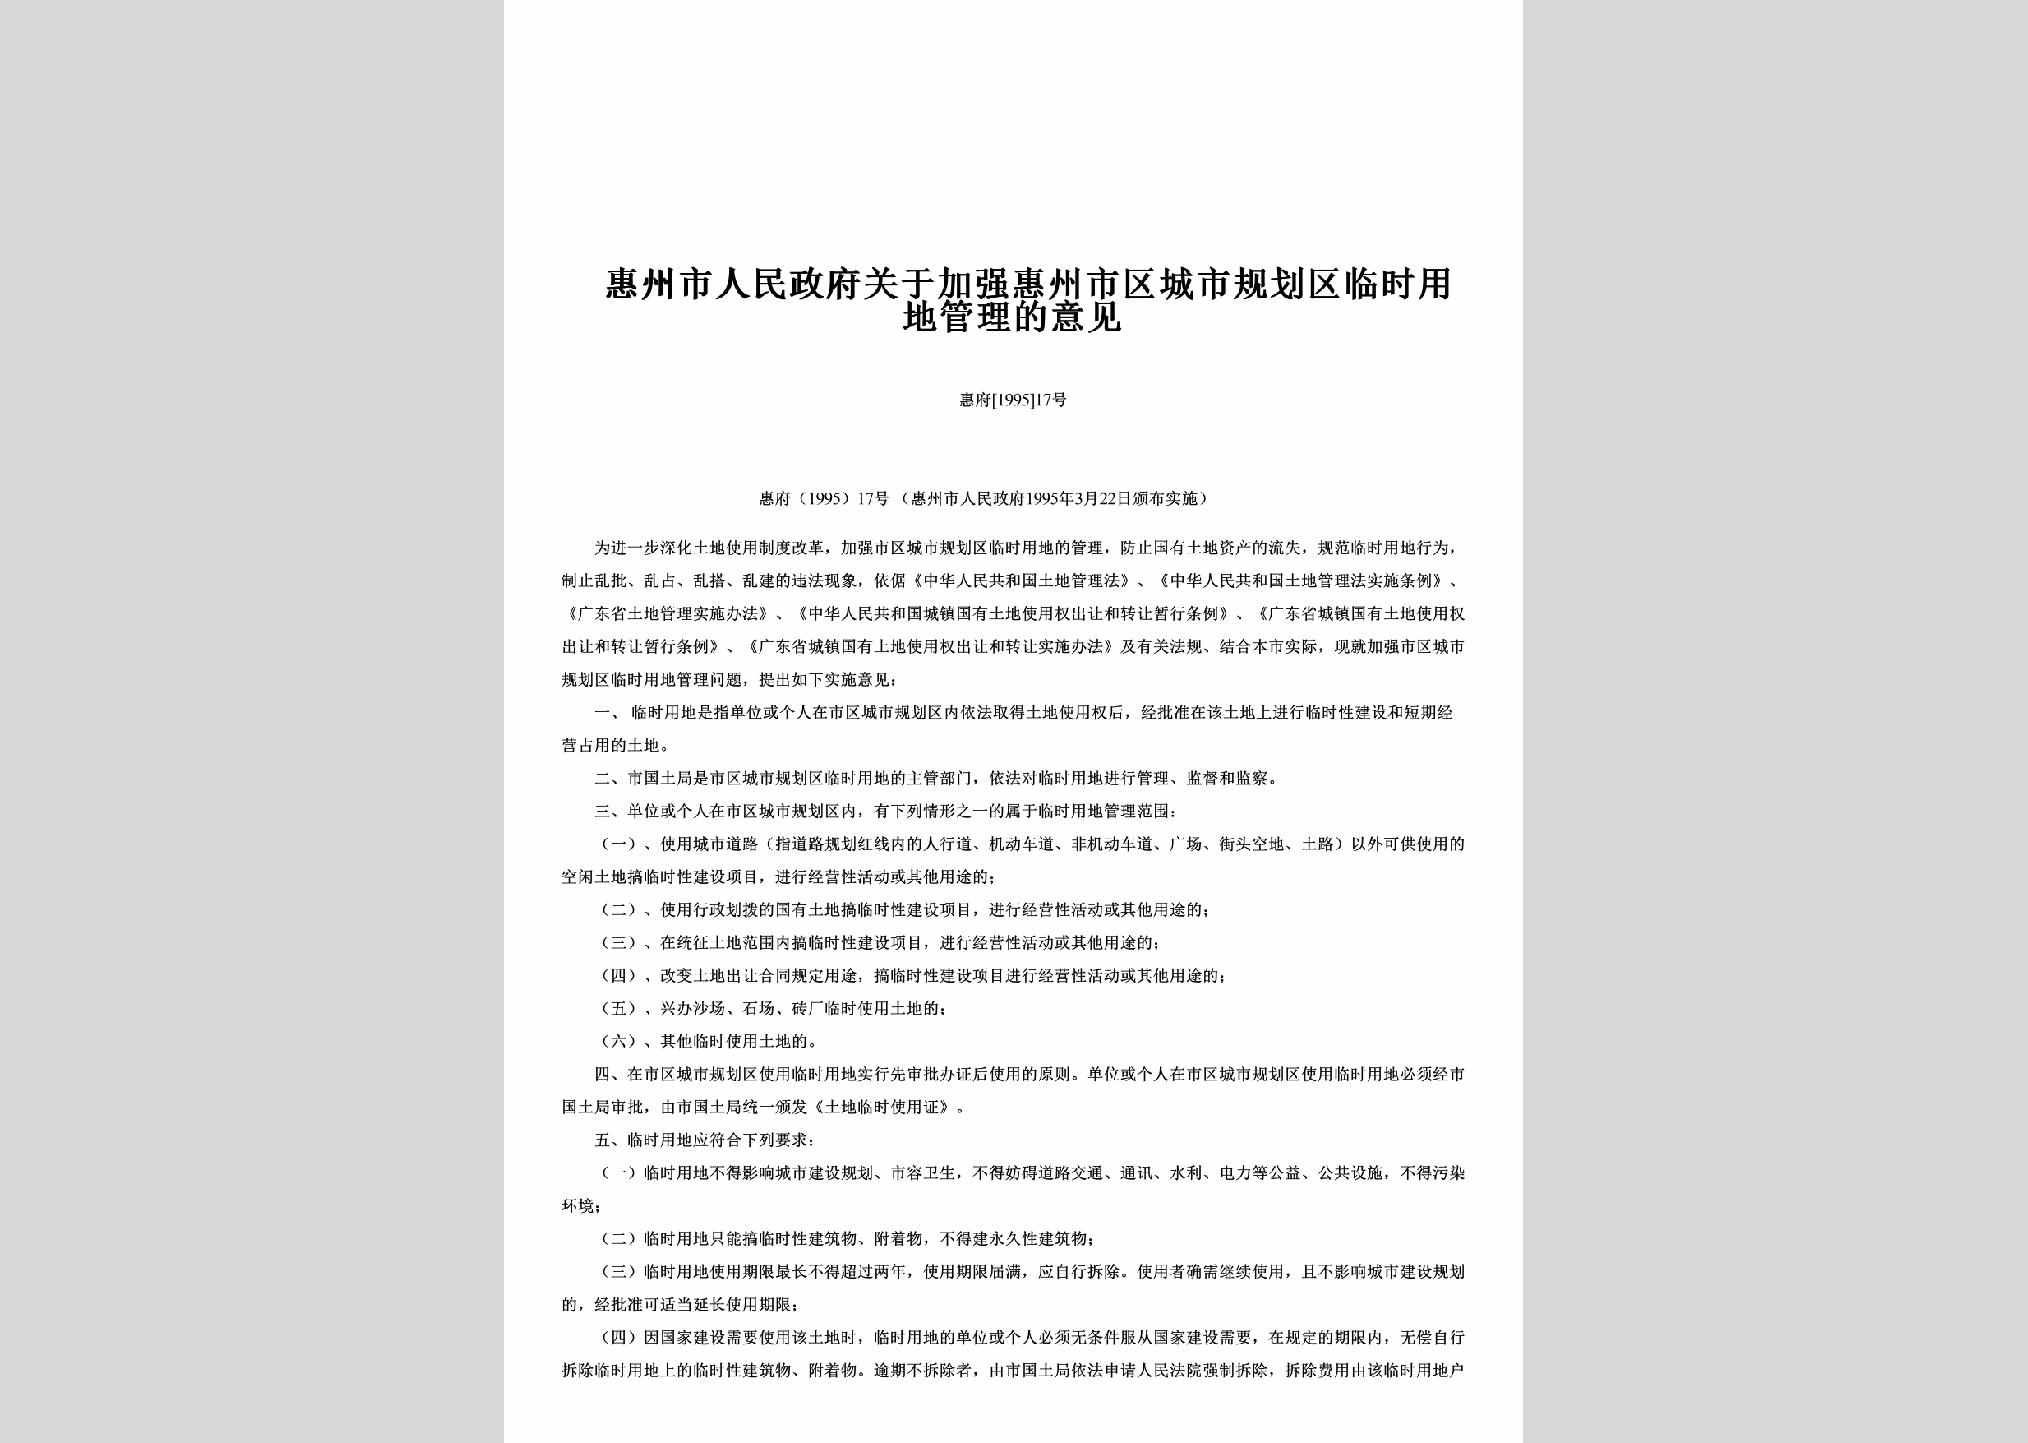 惠府[1995]17号：关于加强惠州市区城市规划区临时用地管理的意见